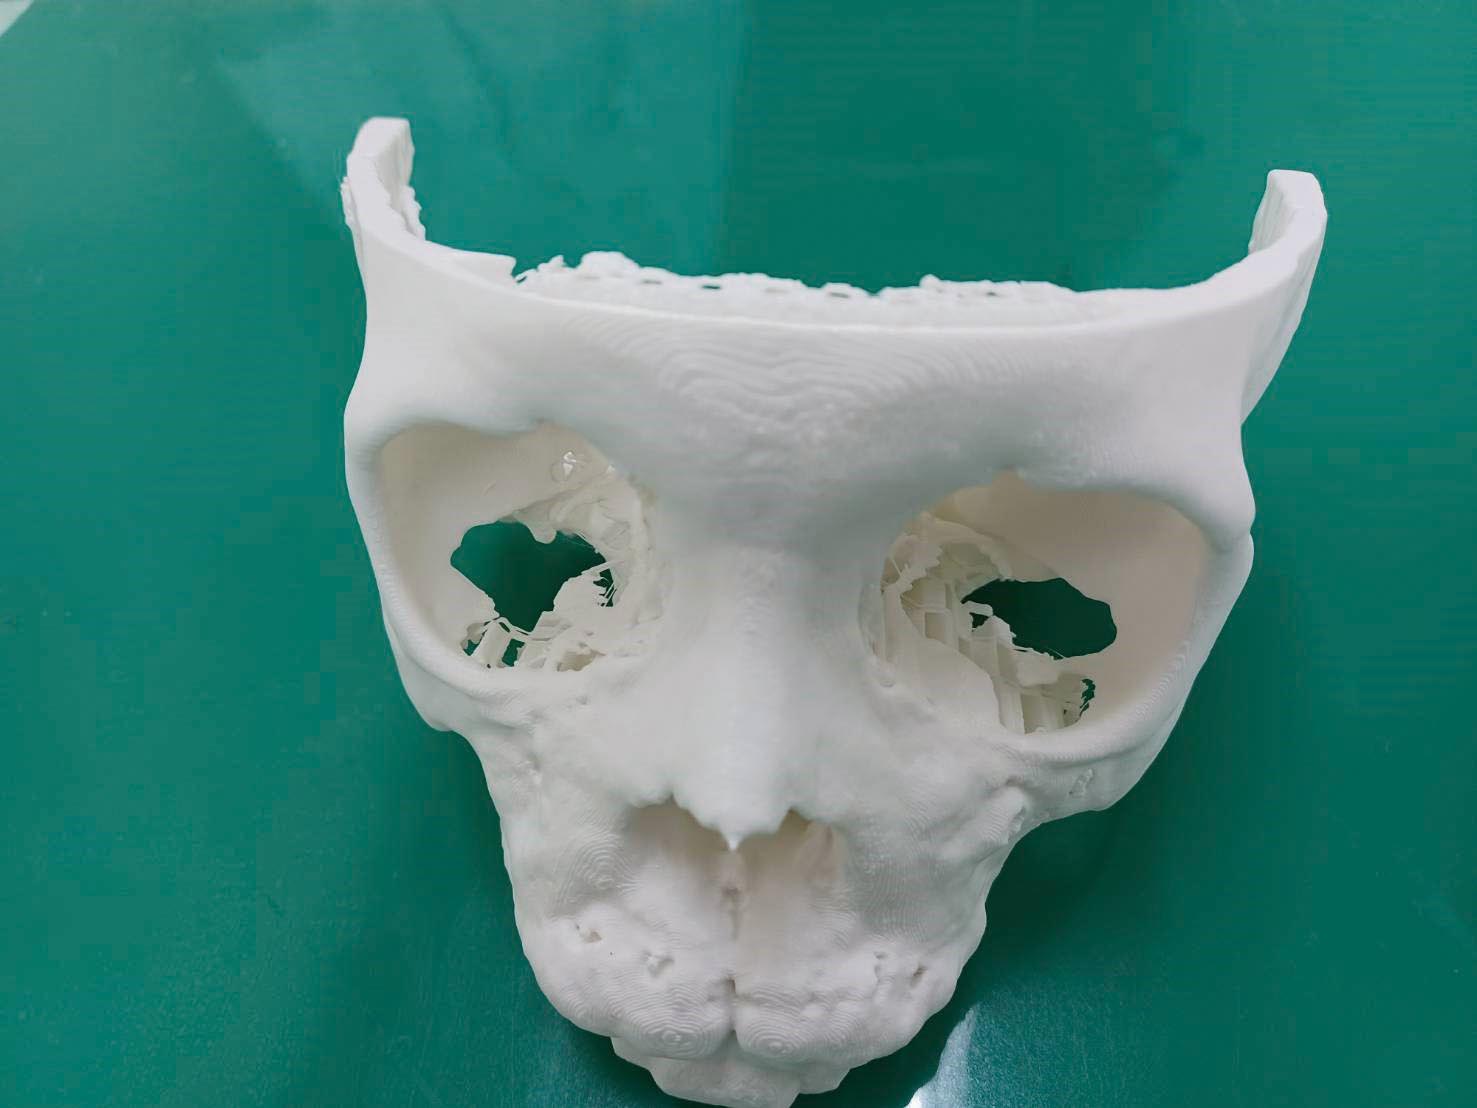 電腦斷層重組的3D模型可發現左側上顎犬齒位於左側眼眶中